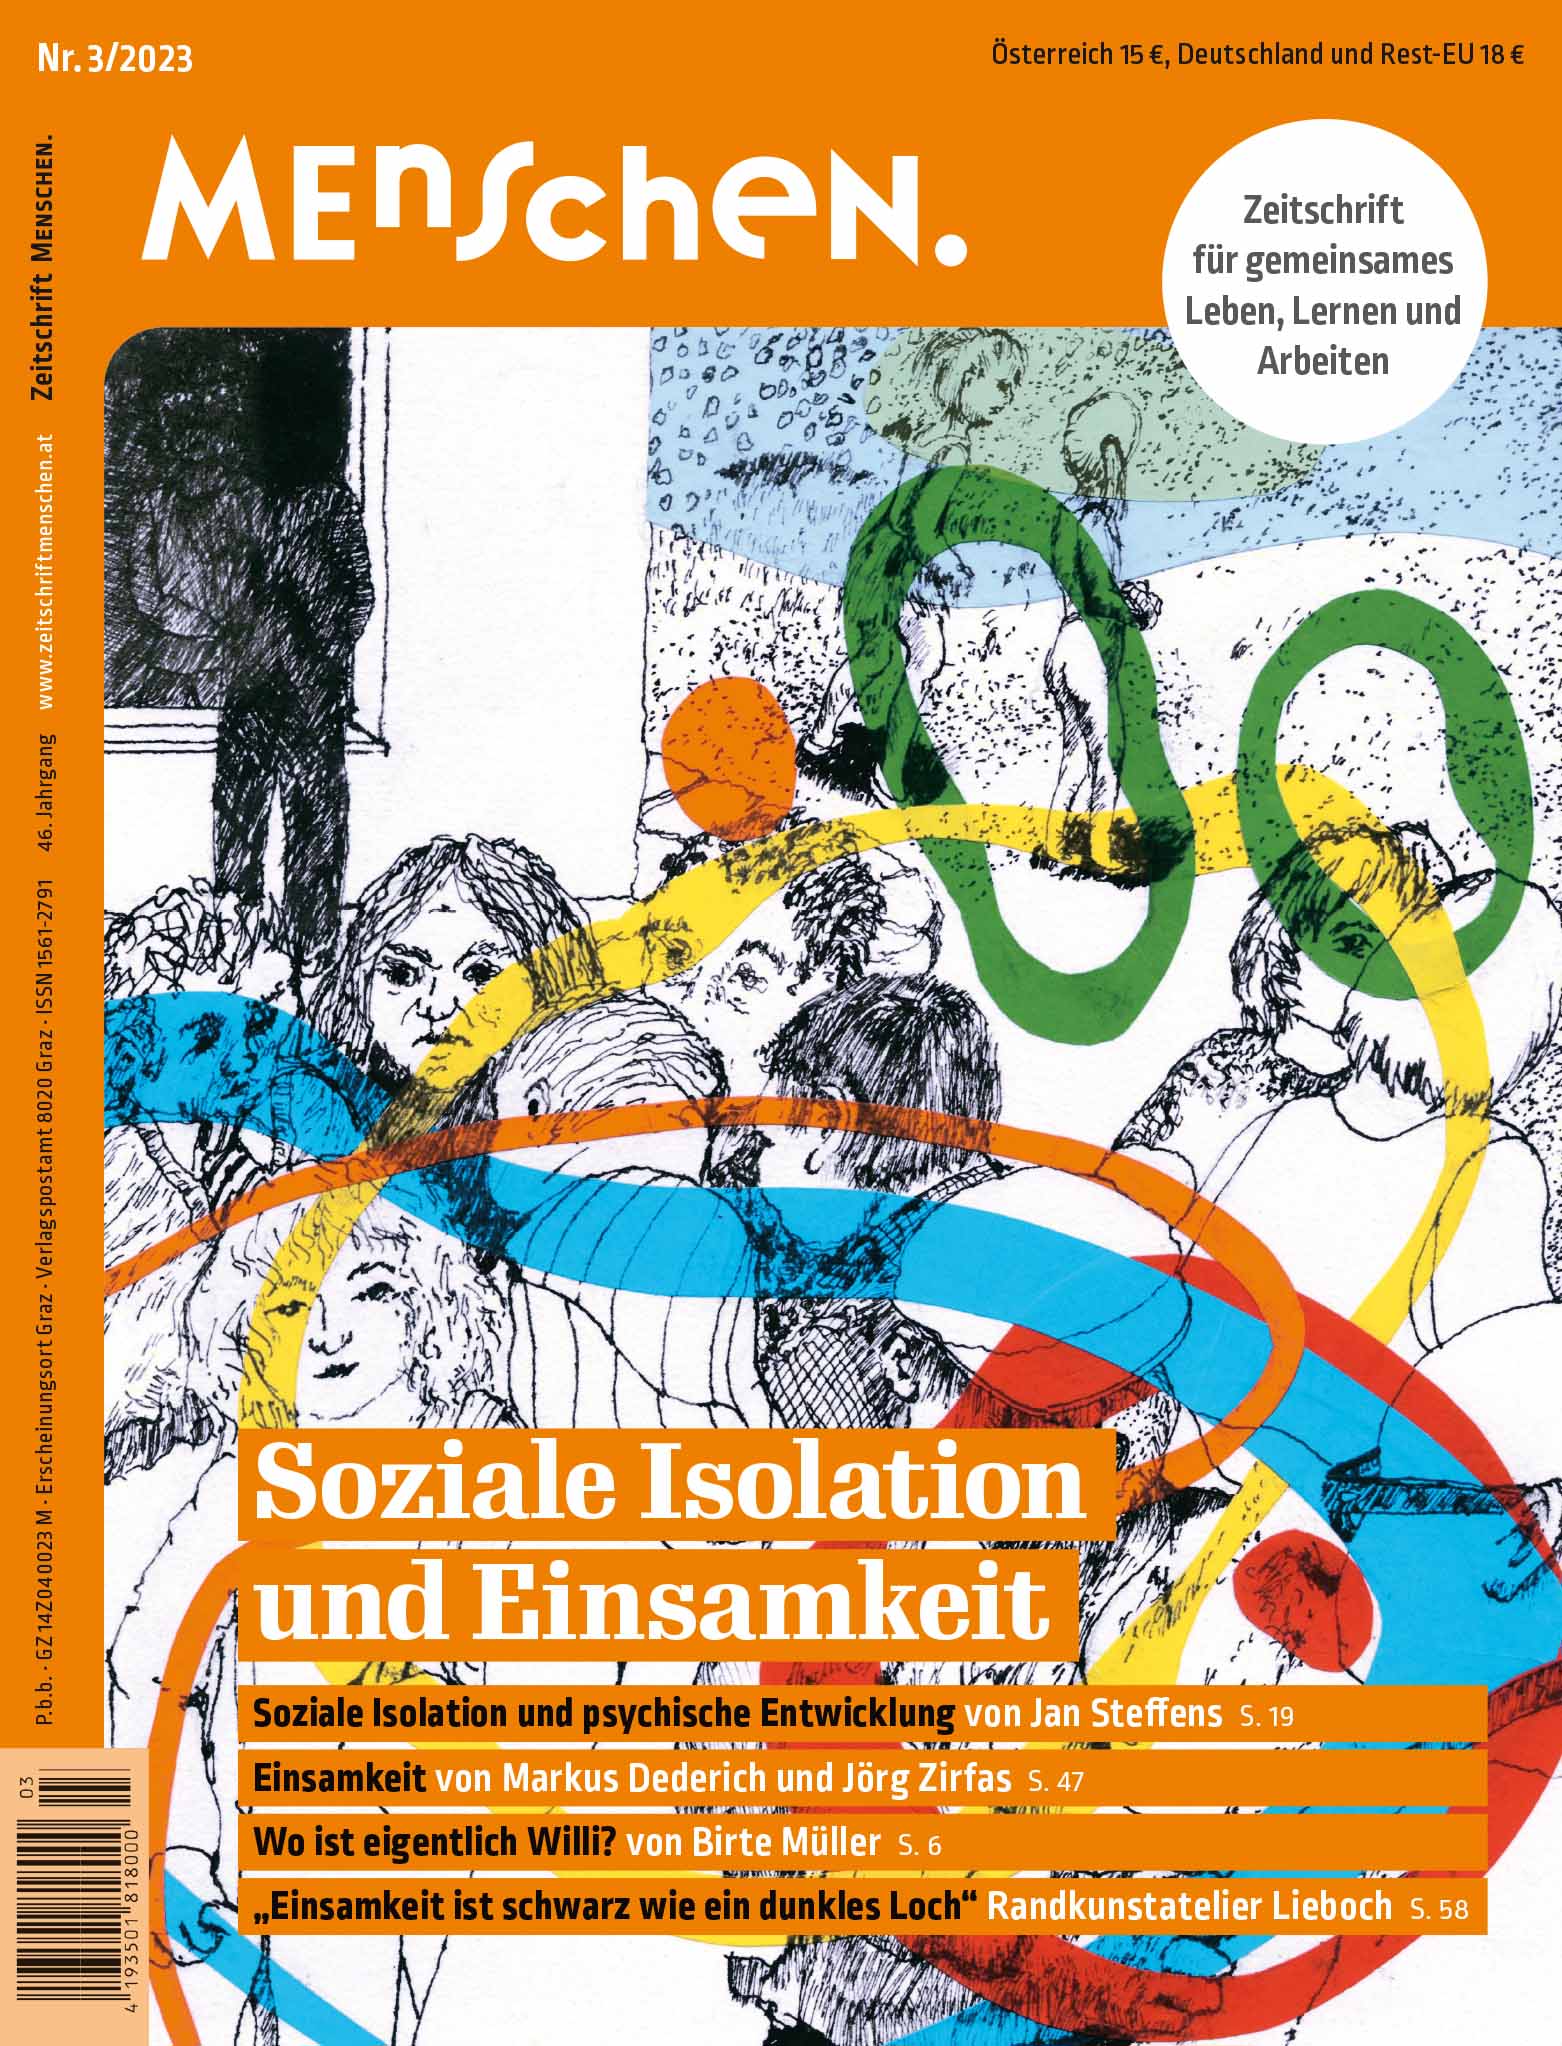 Titelbild der Zeitschrift BEHINDERTE MENSCHEN, Ausgabe 3/2023 "Soziale Isolation und Einsamkeit"